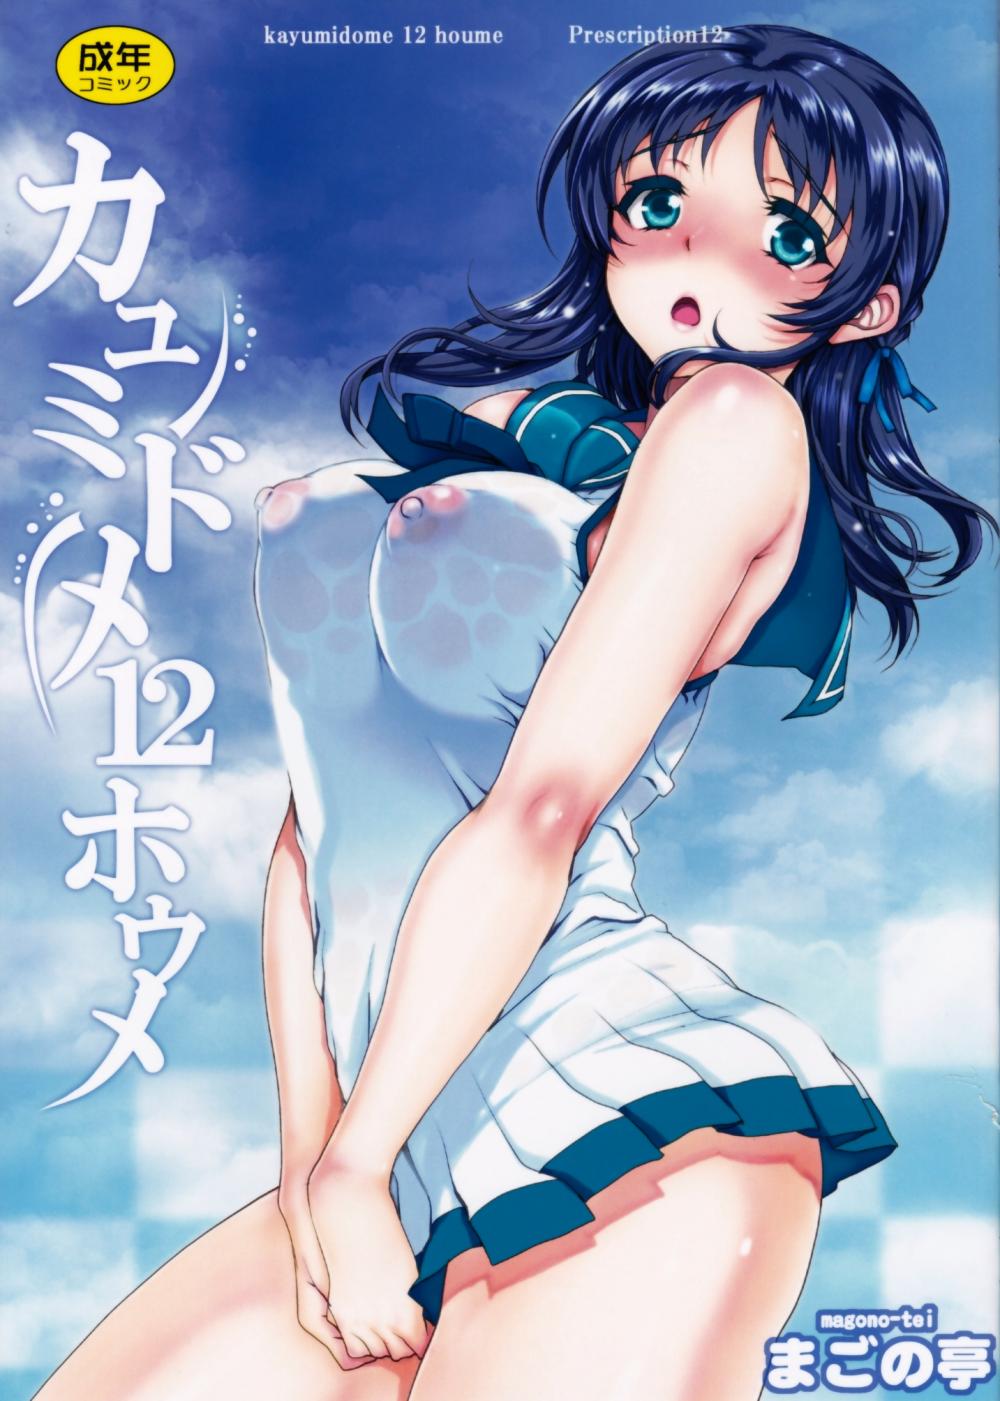 Hentai Manga Comic-Kayumidome 12 Houme-Read-1